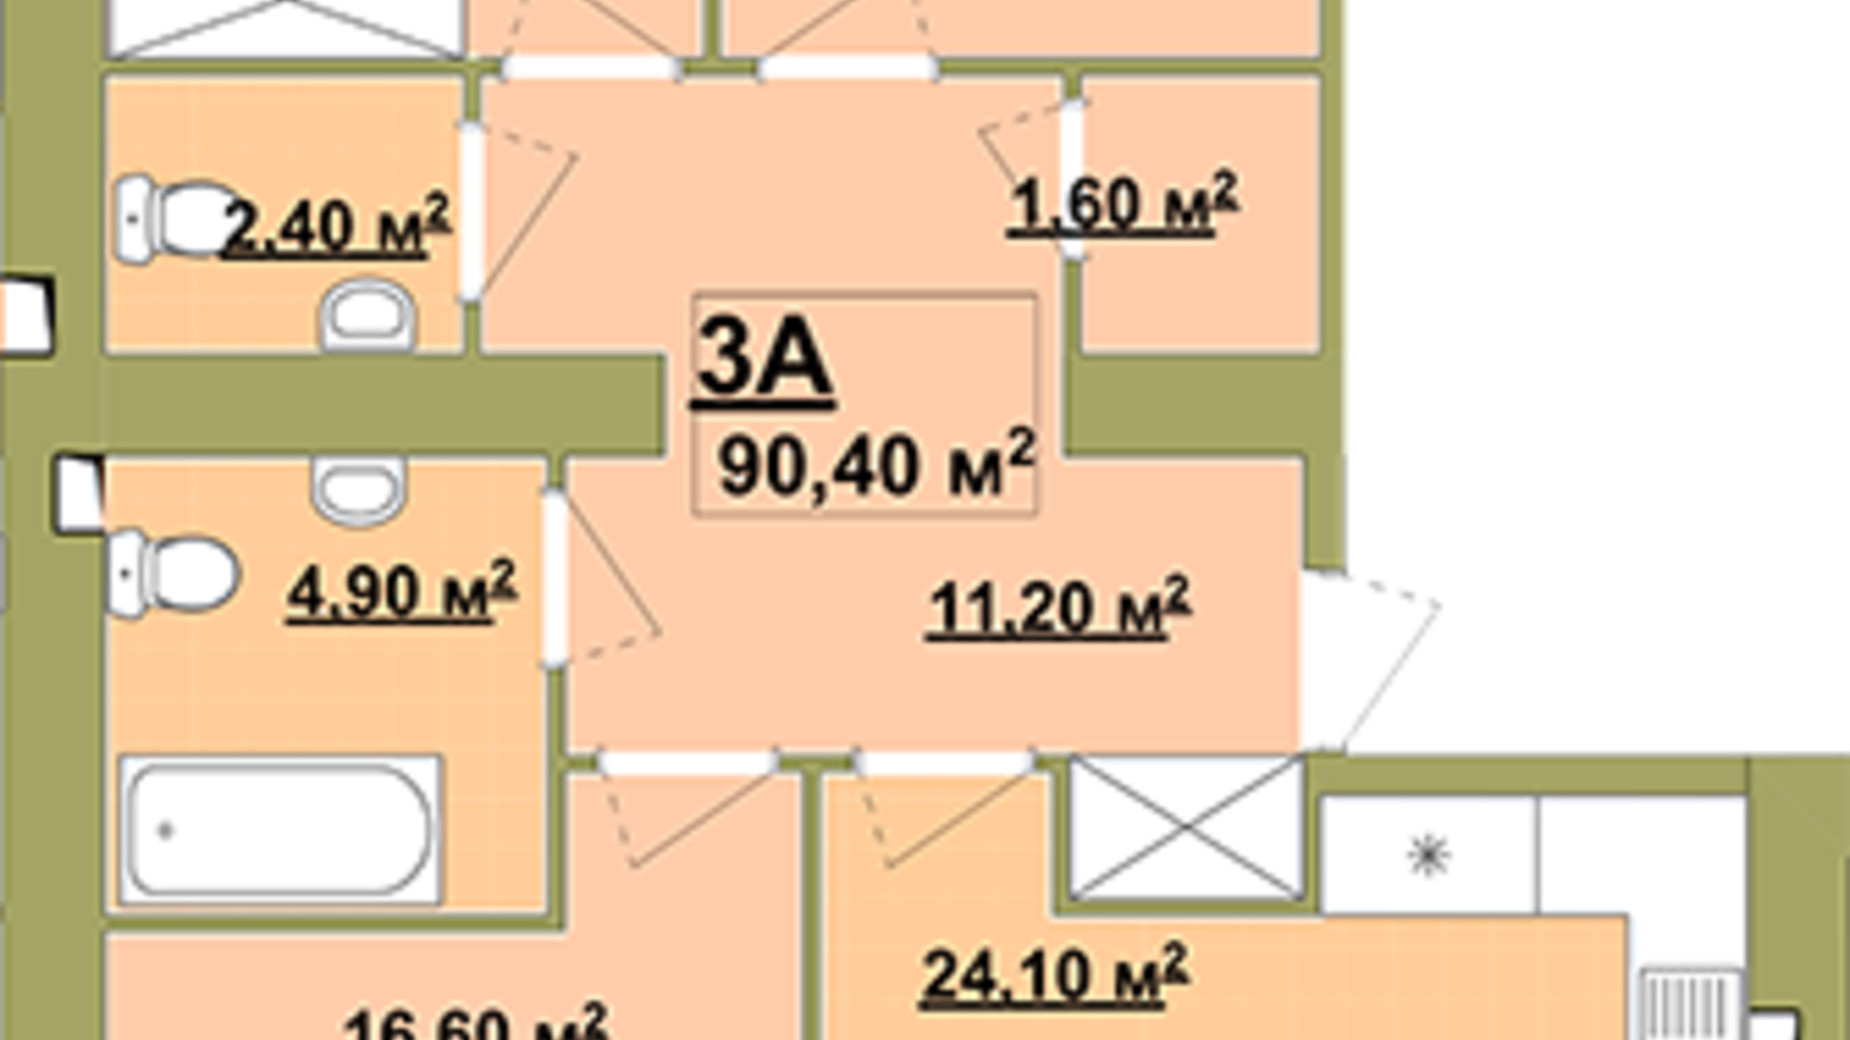 Планування 3-кімнатної квартири в Житловий район Княгинин 90.4 м², фото 685481